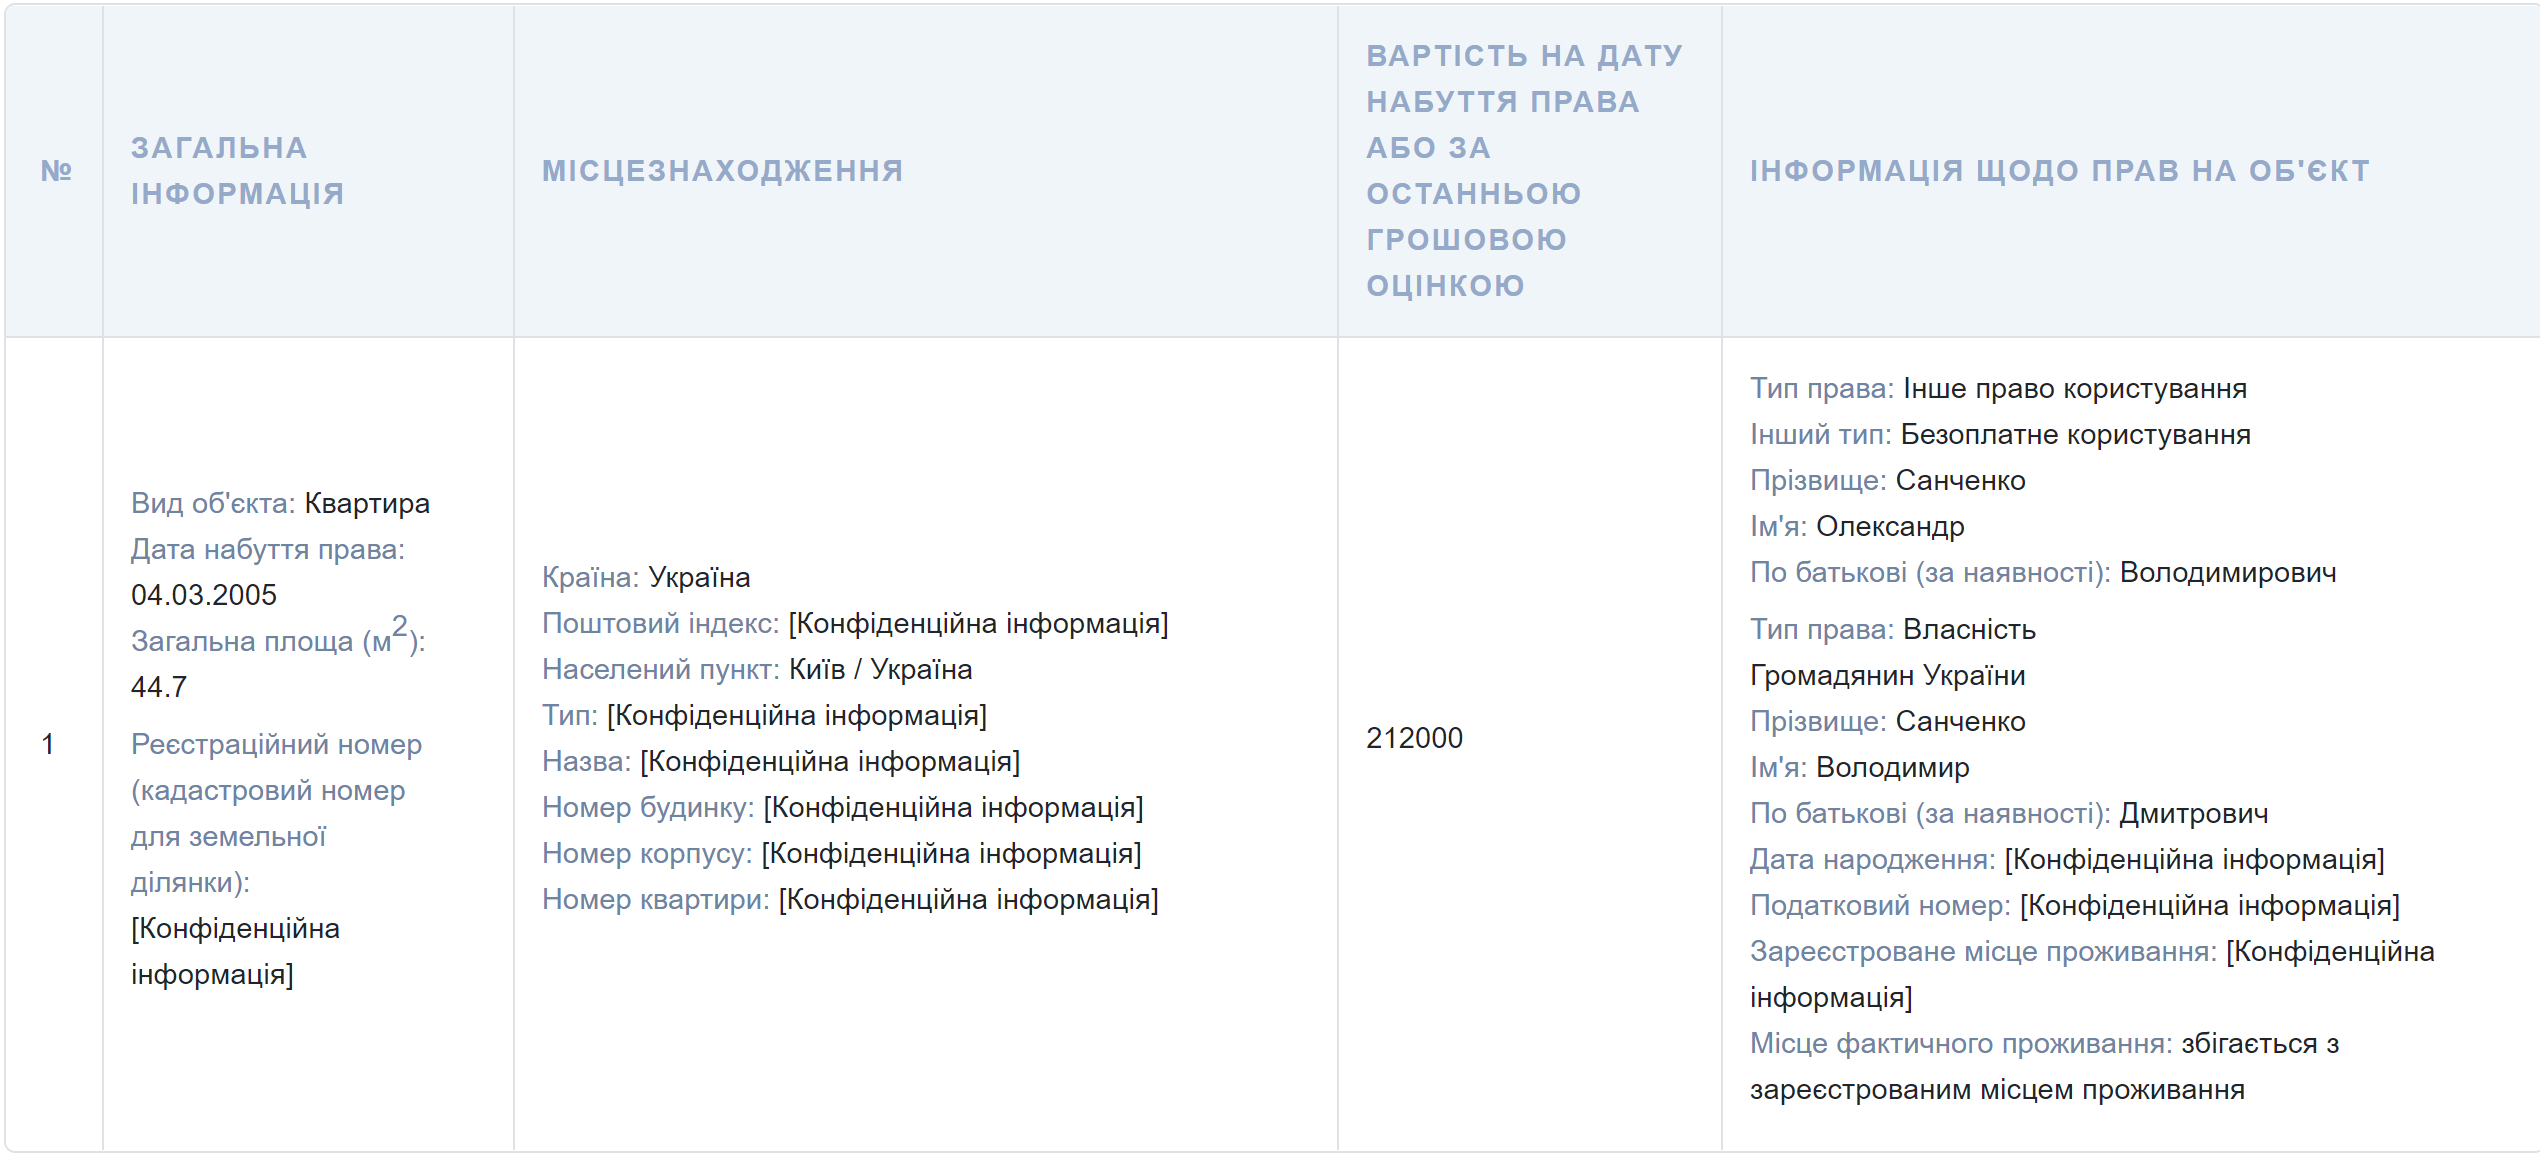 «Слуга» Санченко купив квартиру в Києві за 3,5 млн грн, не маючи потрібних доходів ФОТО